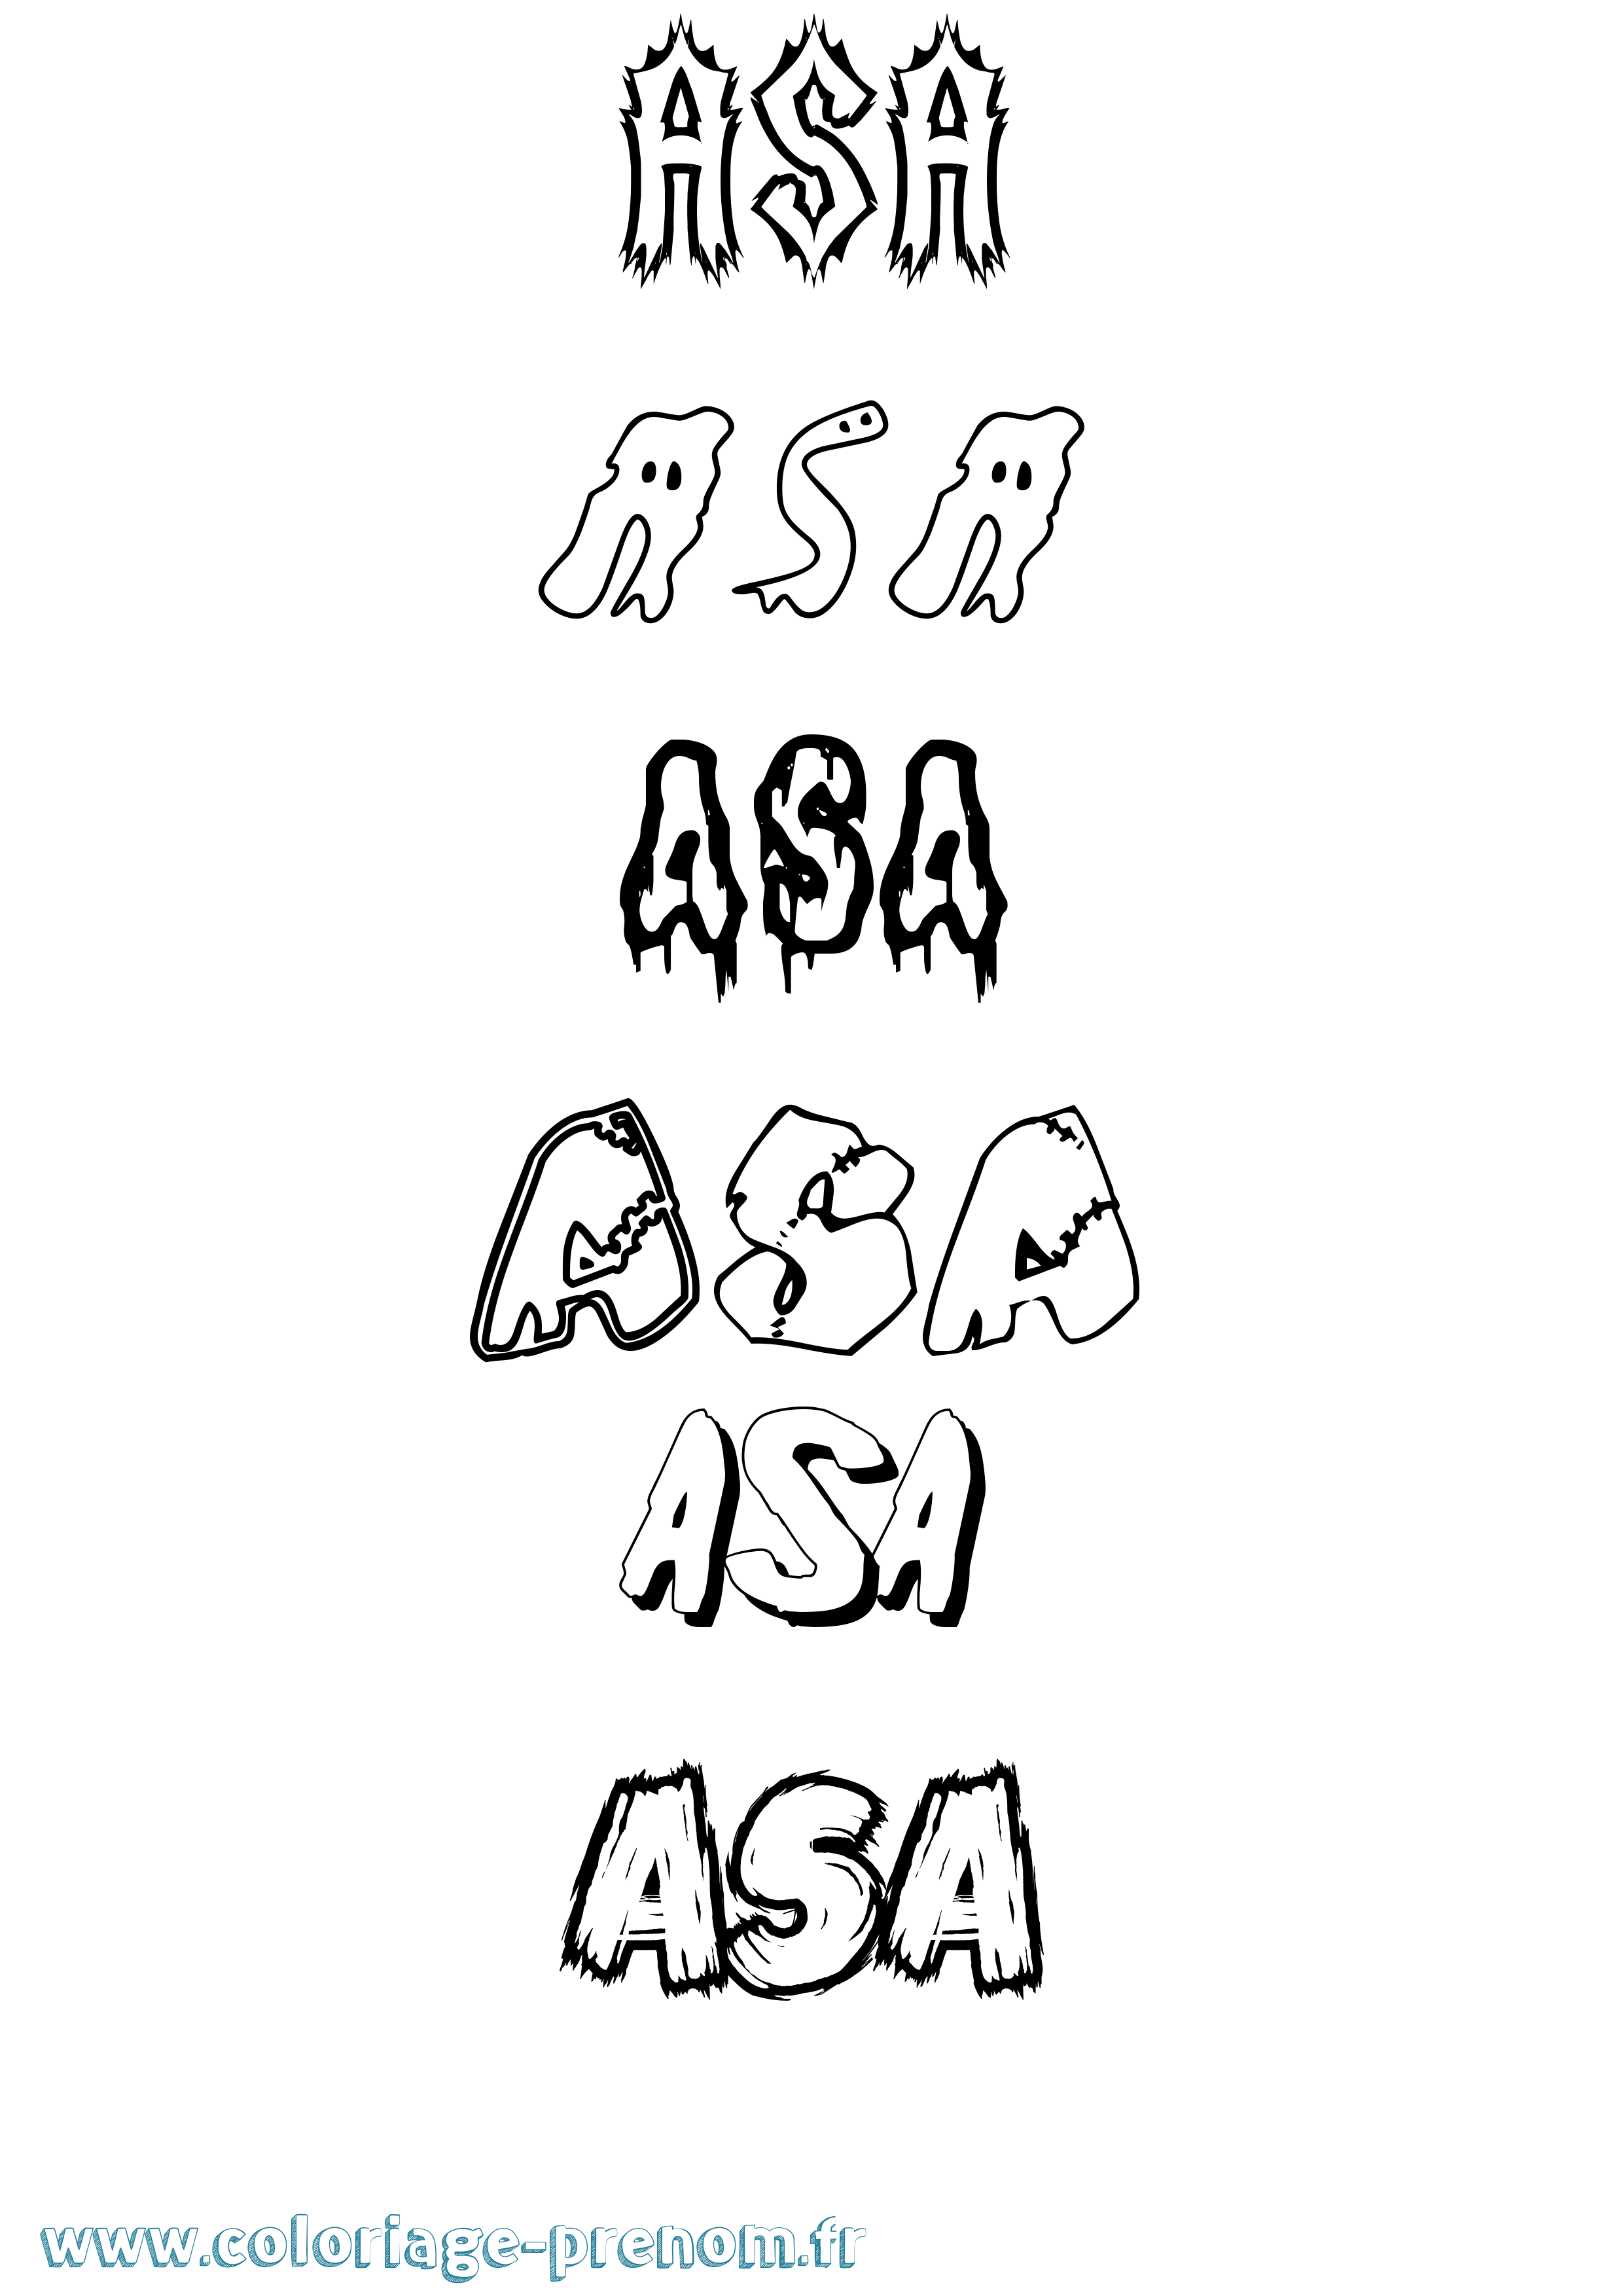 Coloriage prénom Asa Frisson